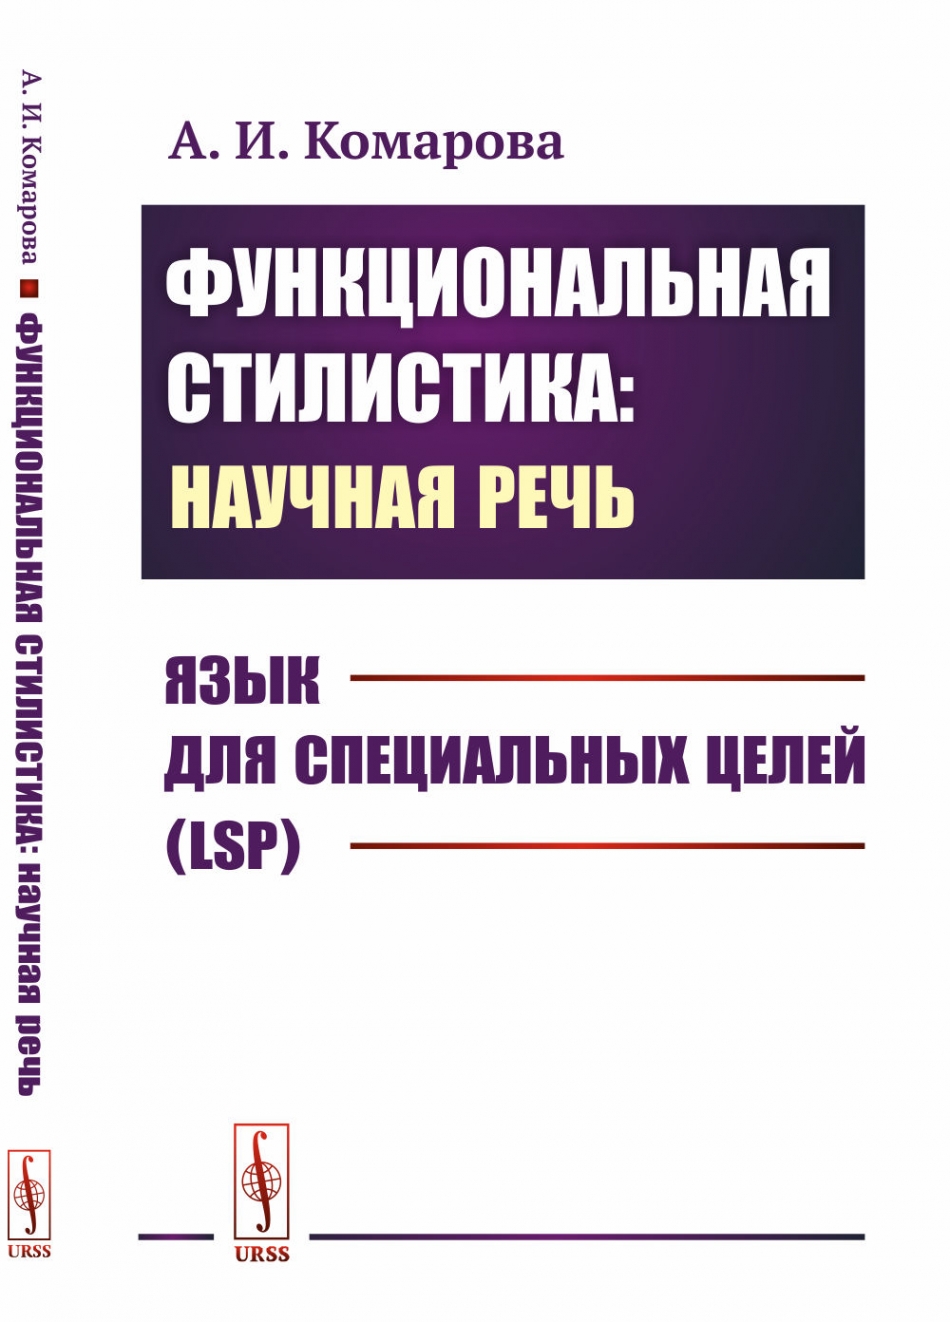 Комарова А.И. Функциональная стилистика: научная речь: Язык для специальных целей (LSP).  